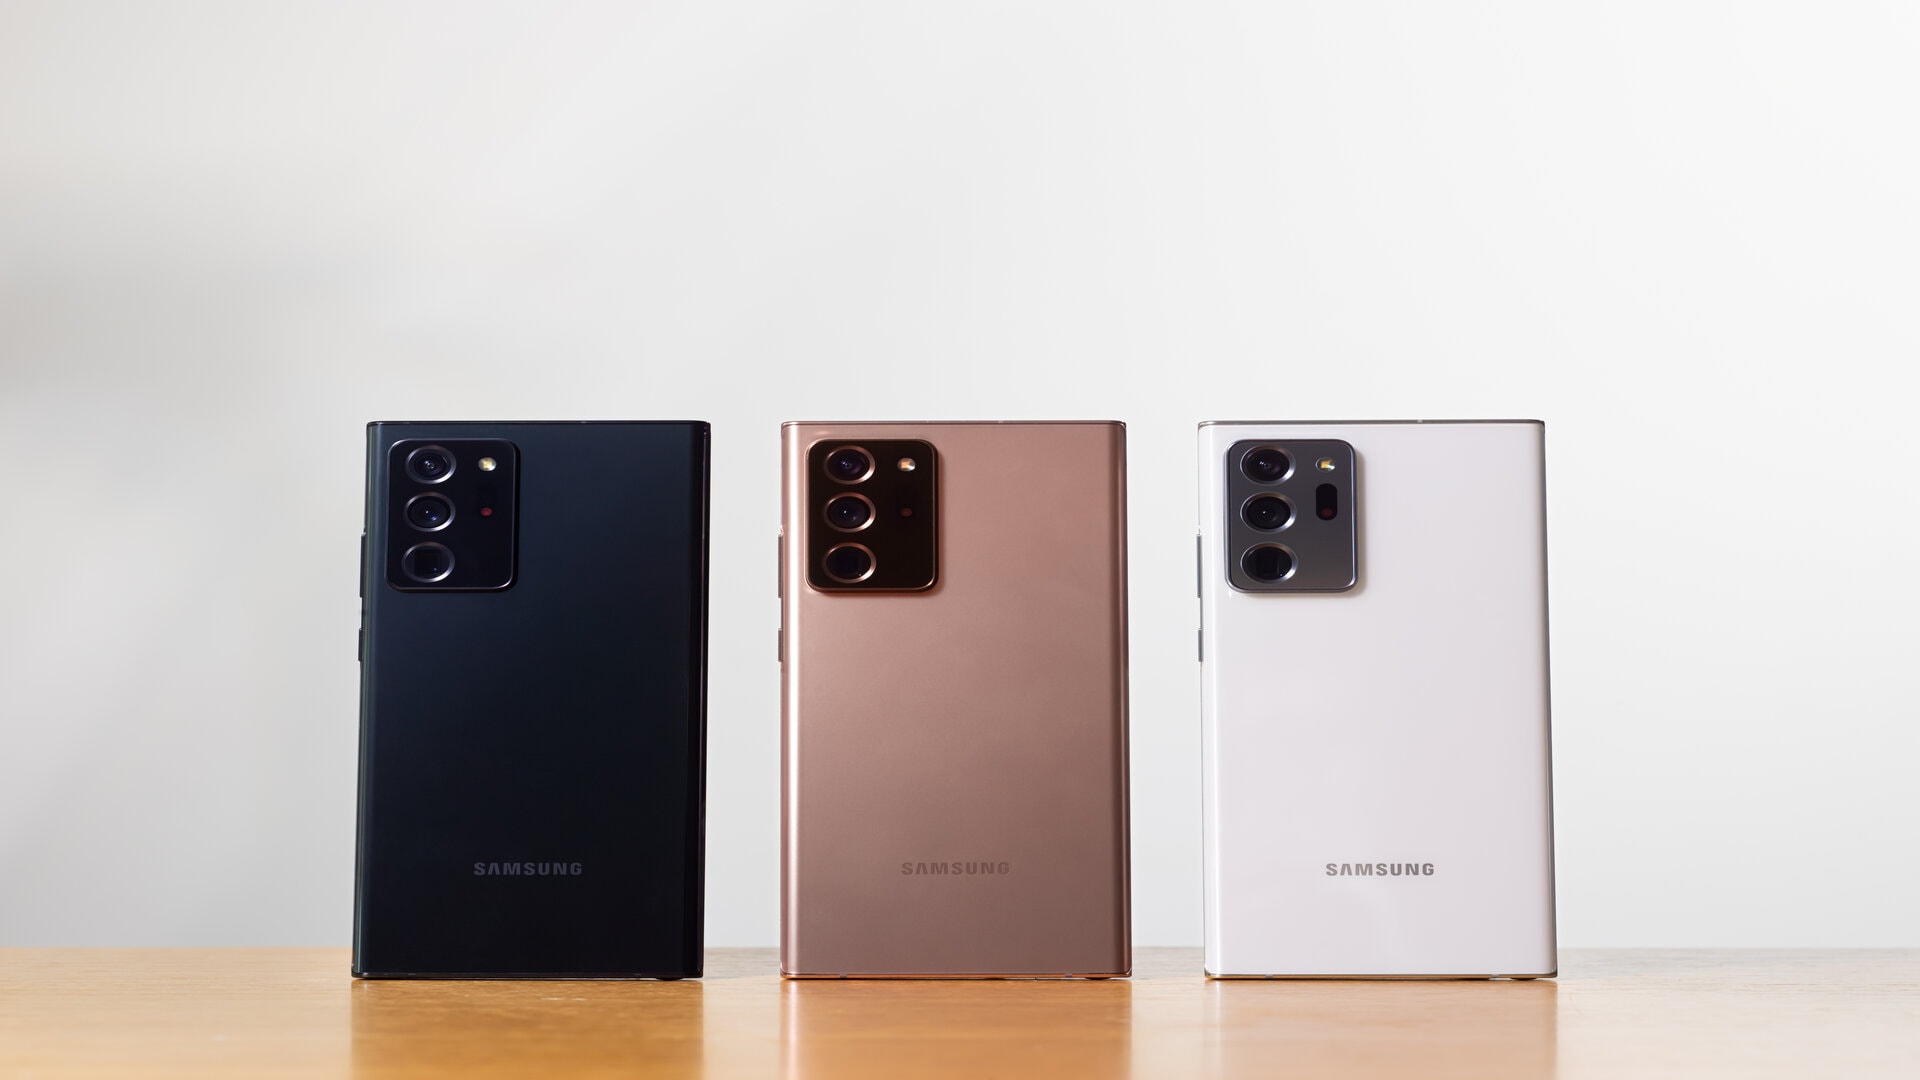 Samsung eleva estándares de la innovación al comprometerse con 3 generaciones de actualizaciones del sistema operativo Android